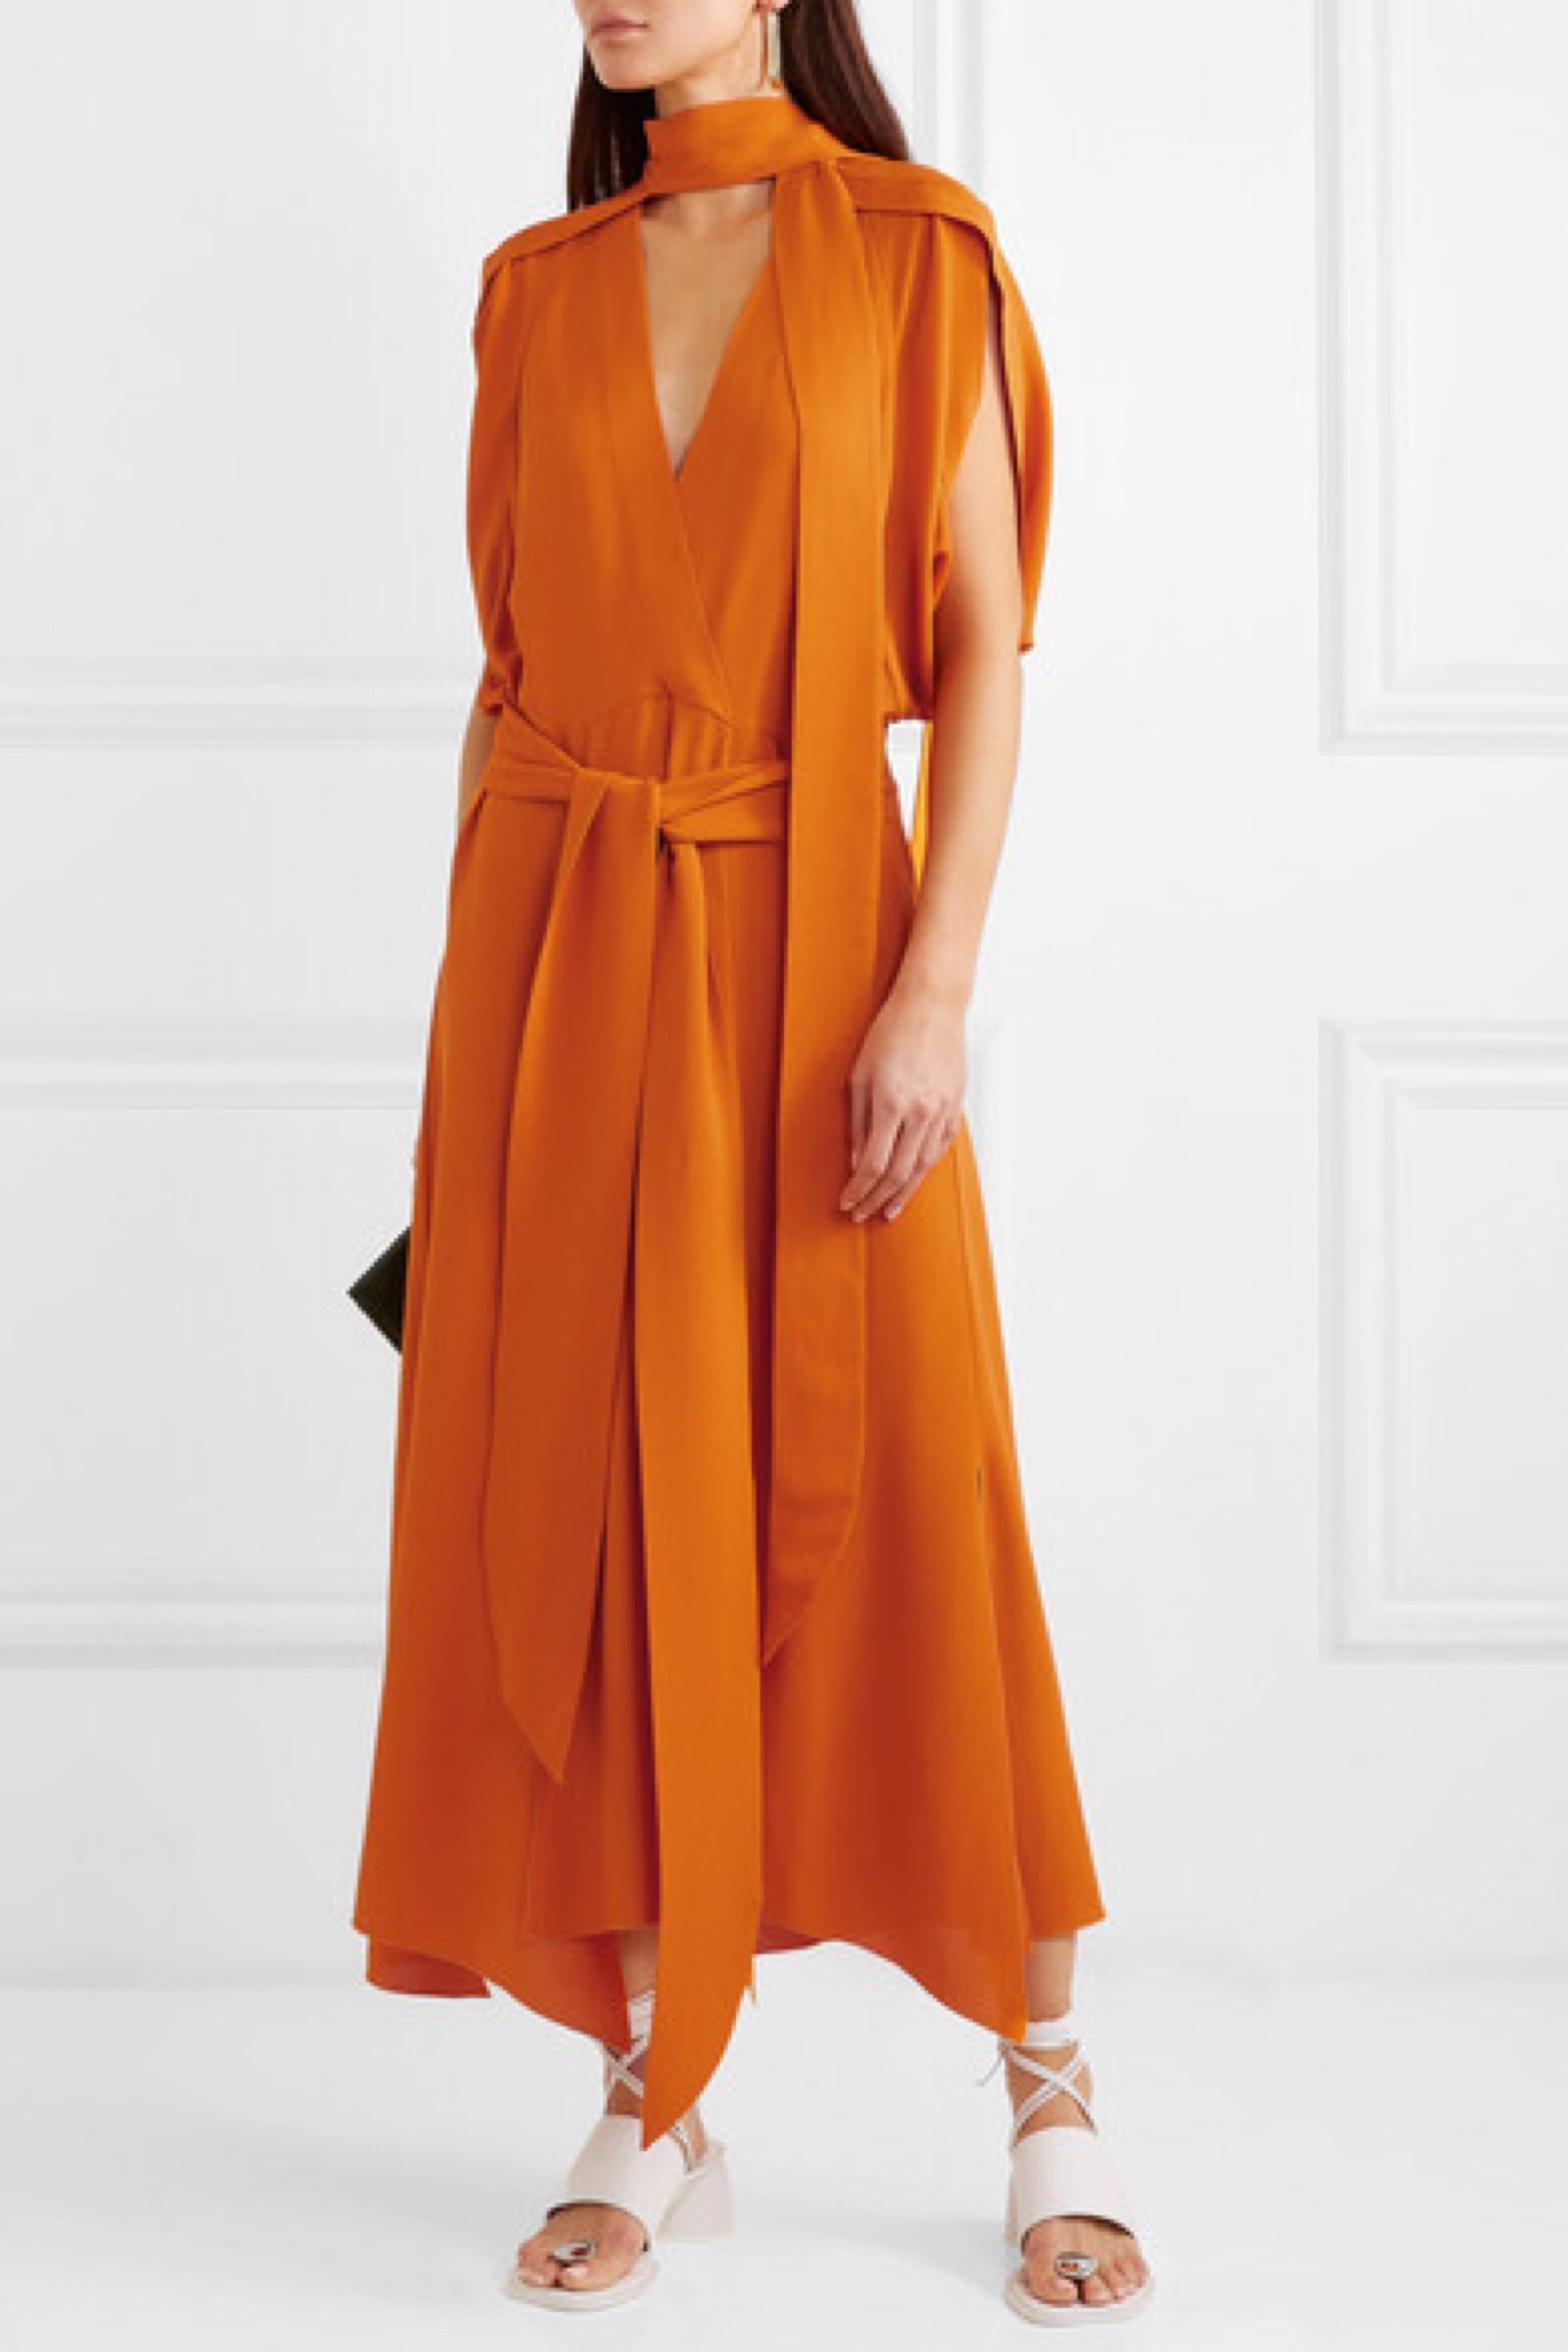 这款连衣裙采用橙色真丝绉纱拼接而成,开衩下摆轻盈灵动.